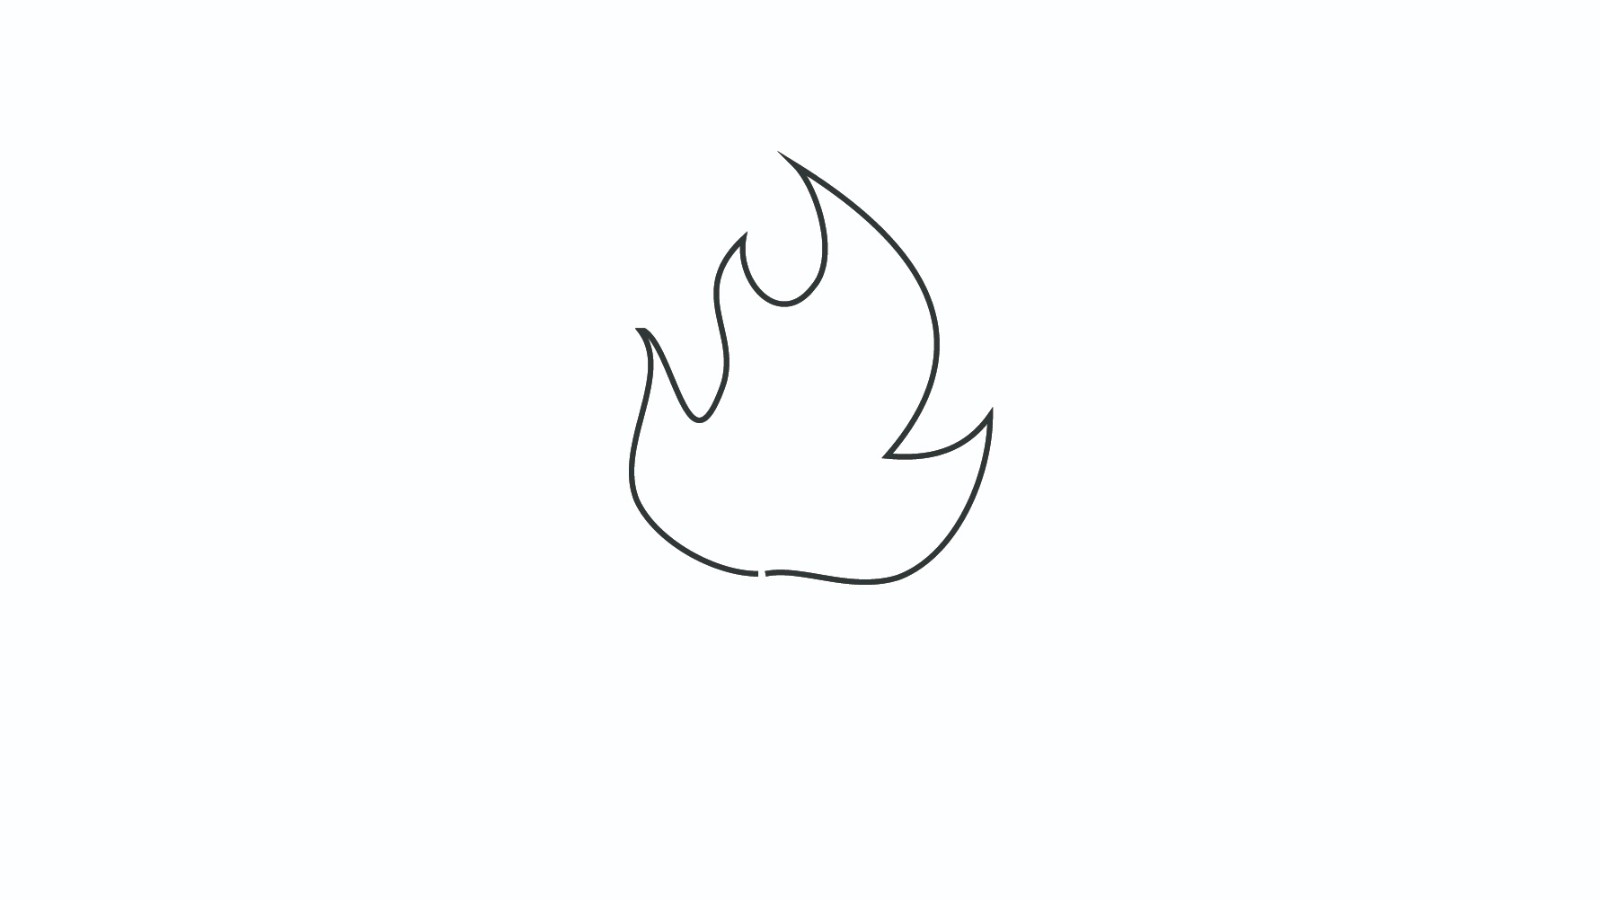 火焰哥尔赞的简笔画图片